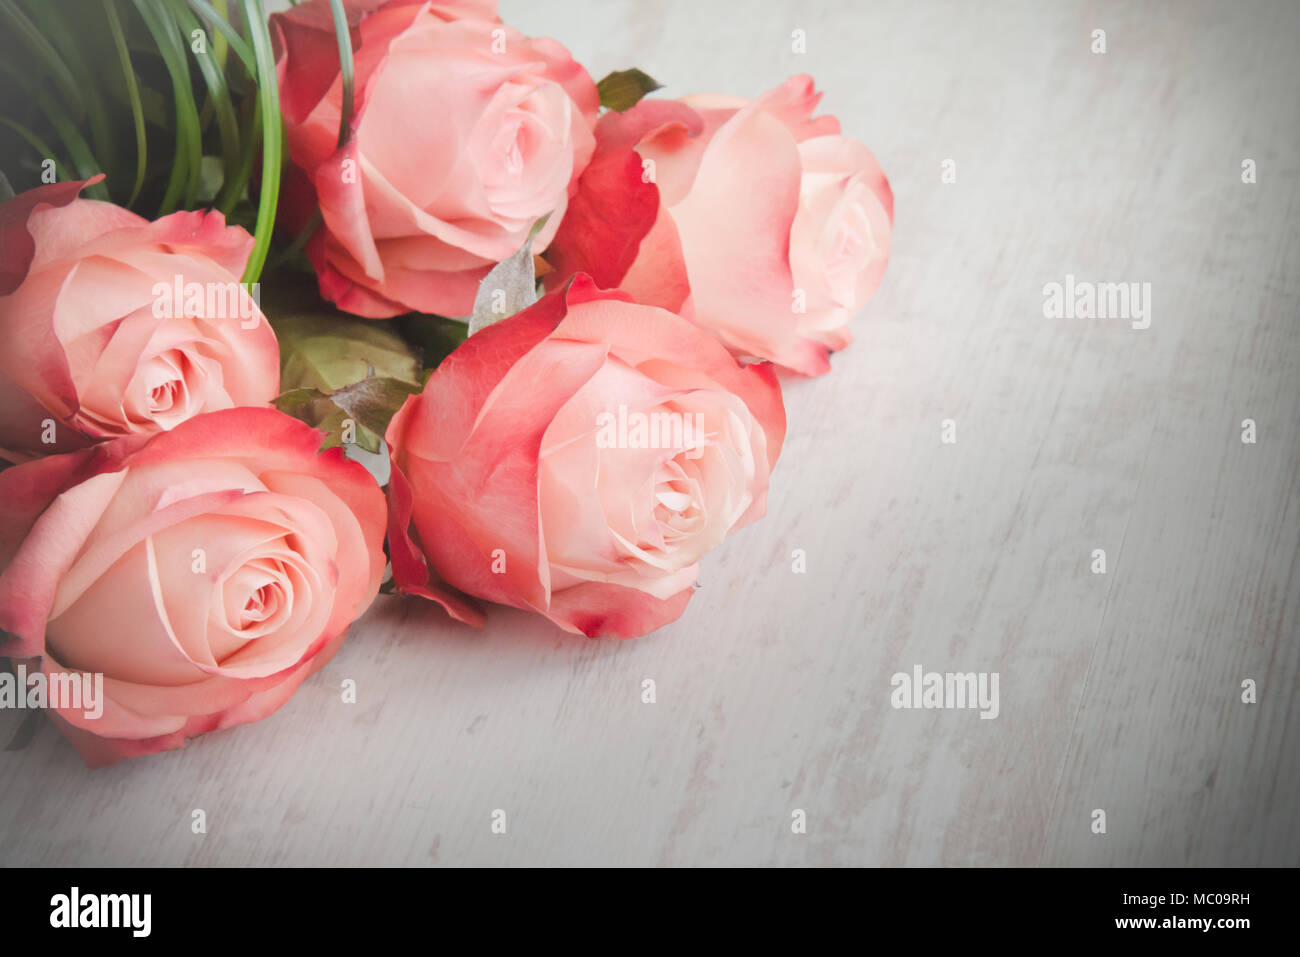 Ảnh nền hoa hồng cổ điển là điểm nhấn hoàn hảo cho máy tính bạn. Hãy để những gam màu nhẹ nhàng của hoa hồng cổ điển mang lại cho bạn cảm giác thư thái và tươi mới mỗi ngày.